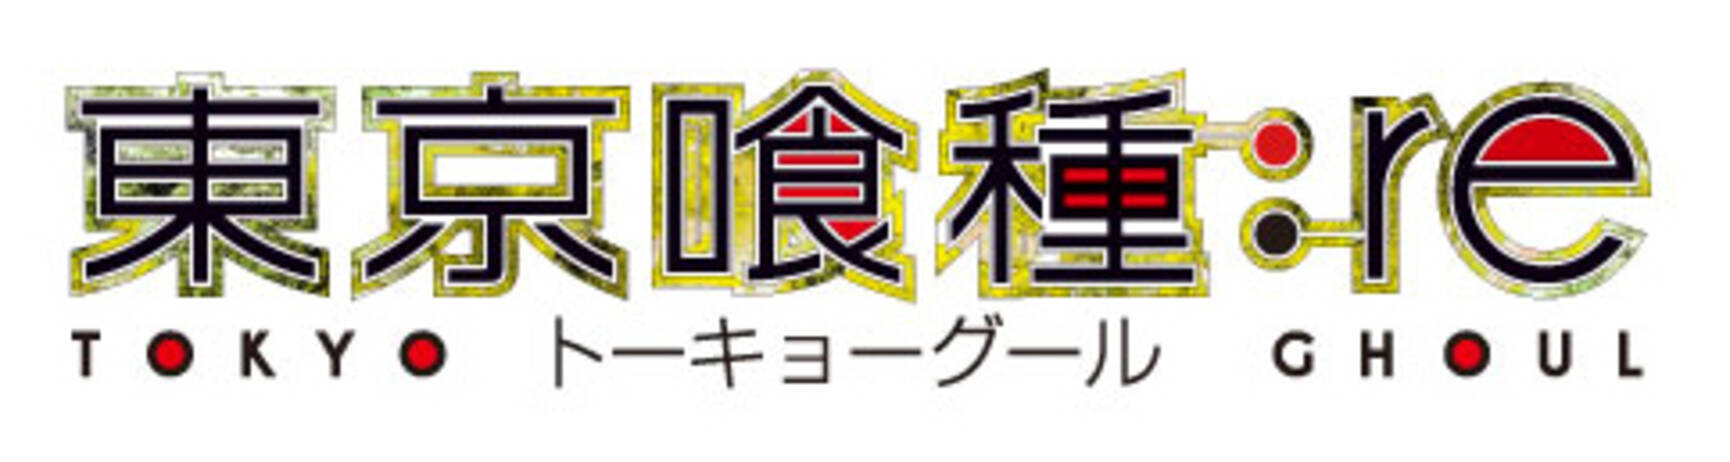 東京喰種トーキョーグール Re よりtシャツが登場 18年10月26日 エキサイトニュース